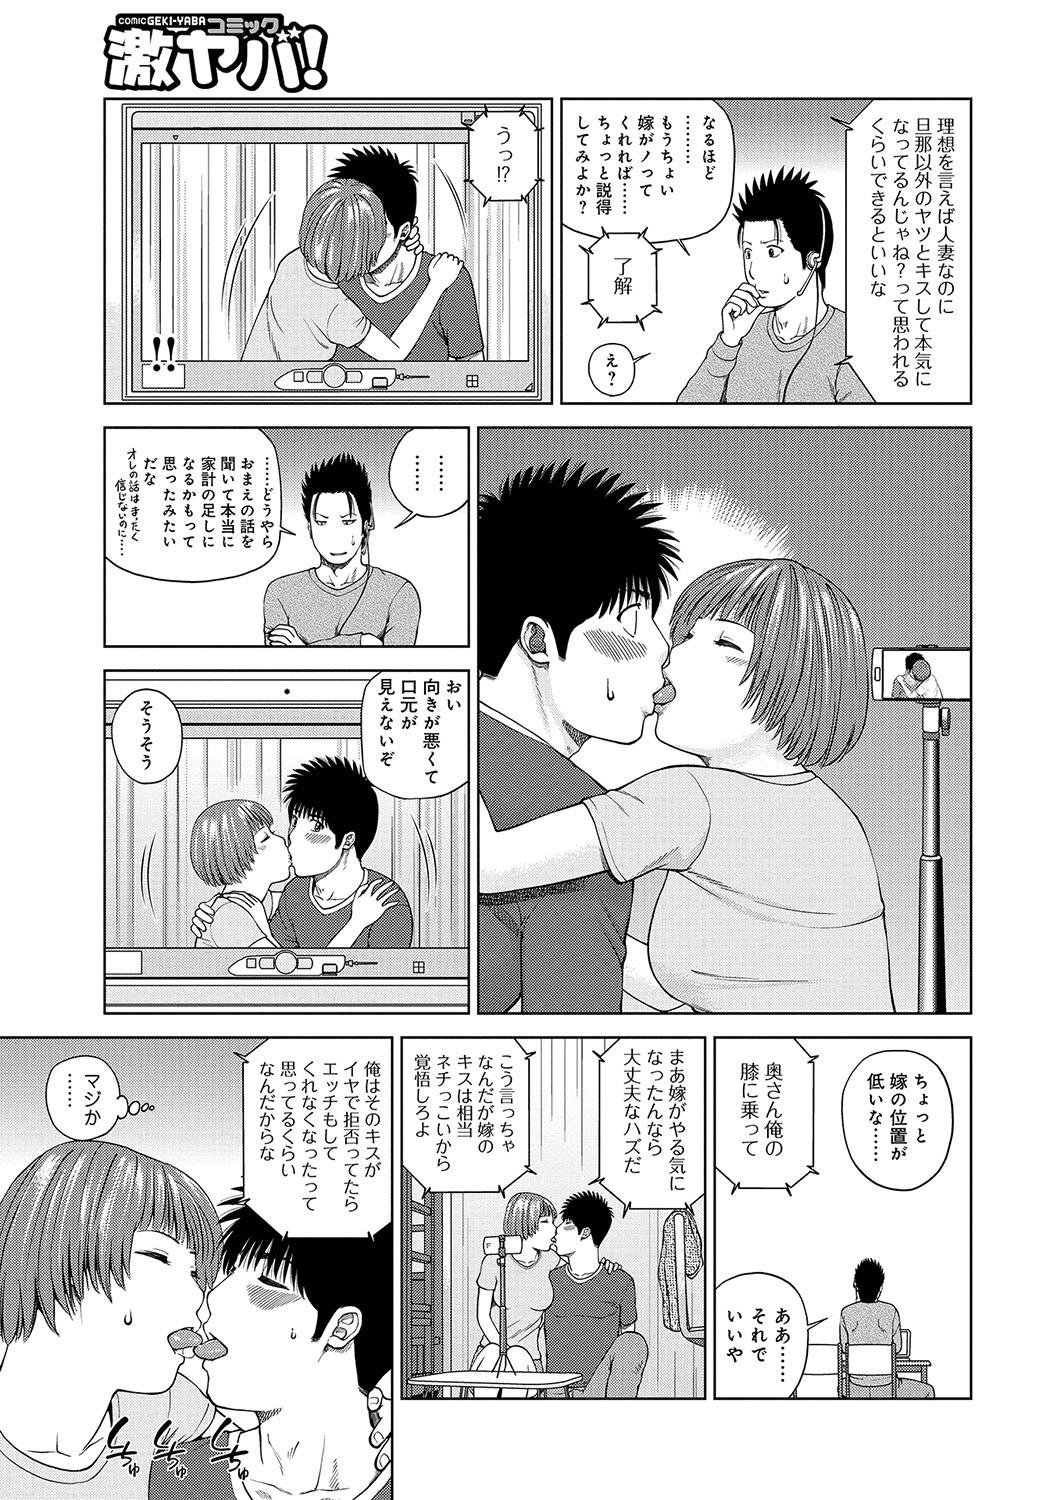 Sentones WEB Ban COMIC Gekiyaba! Vol. 96 Rimming - Page 6